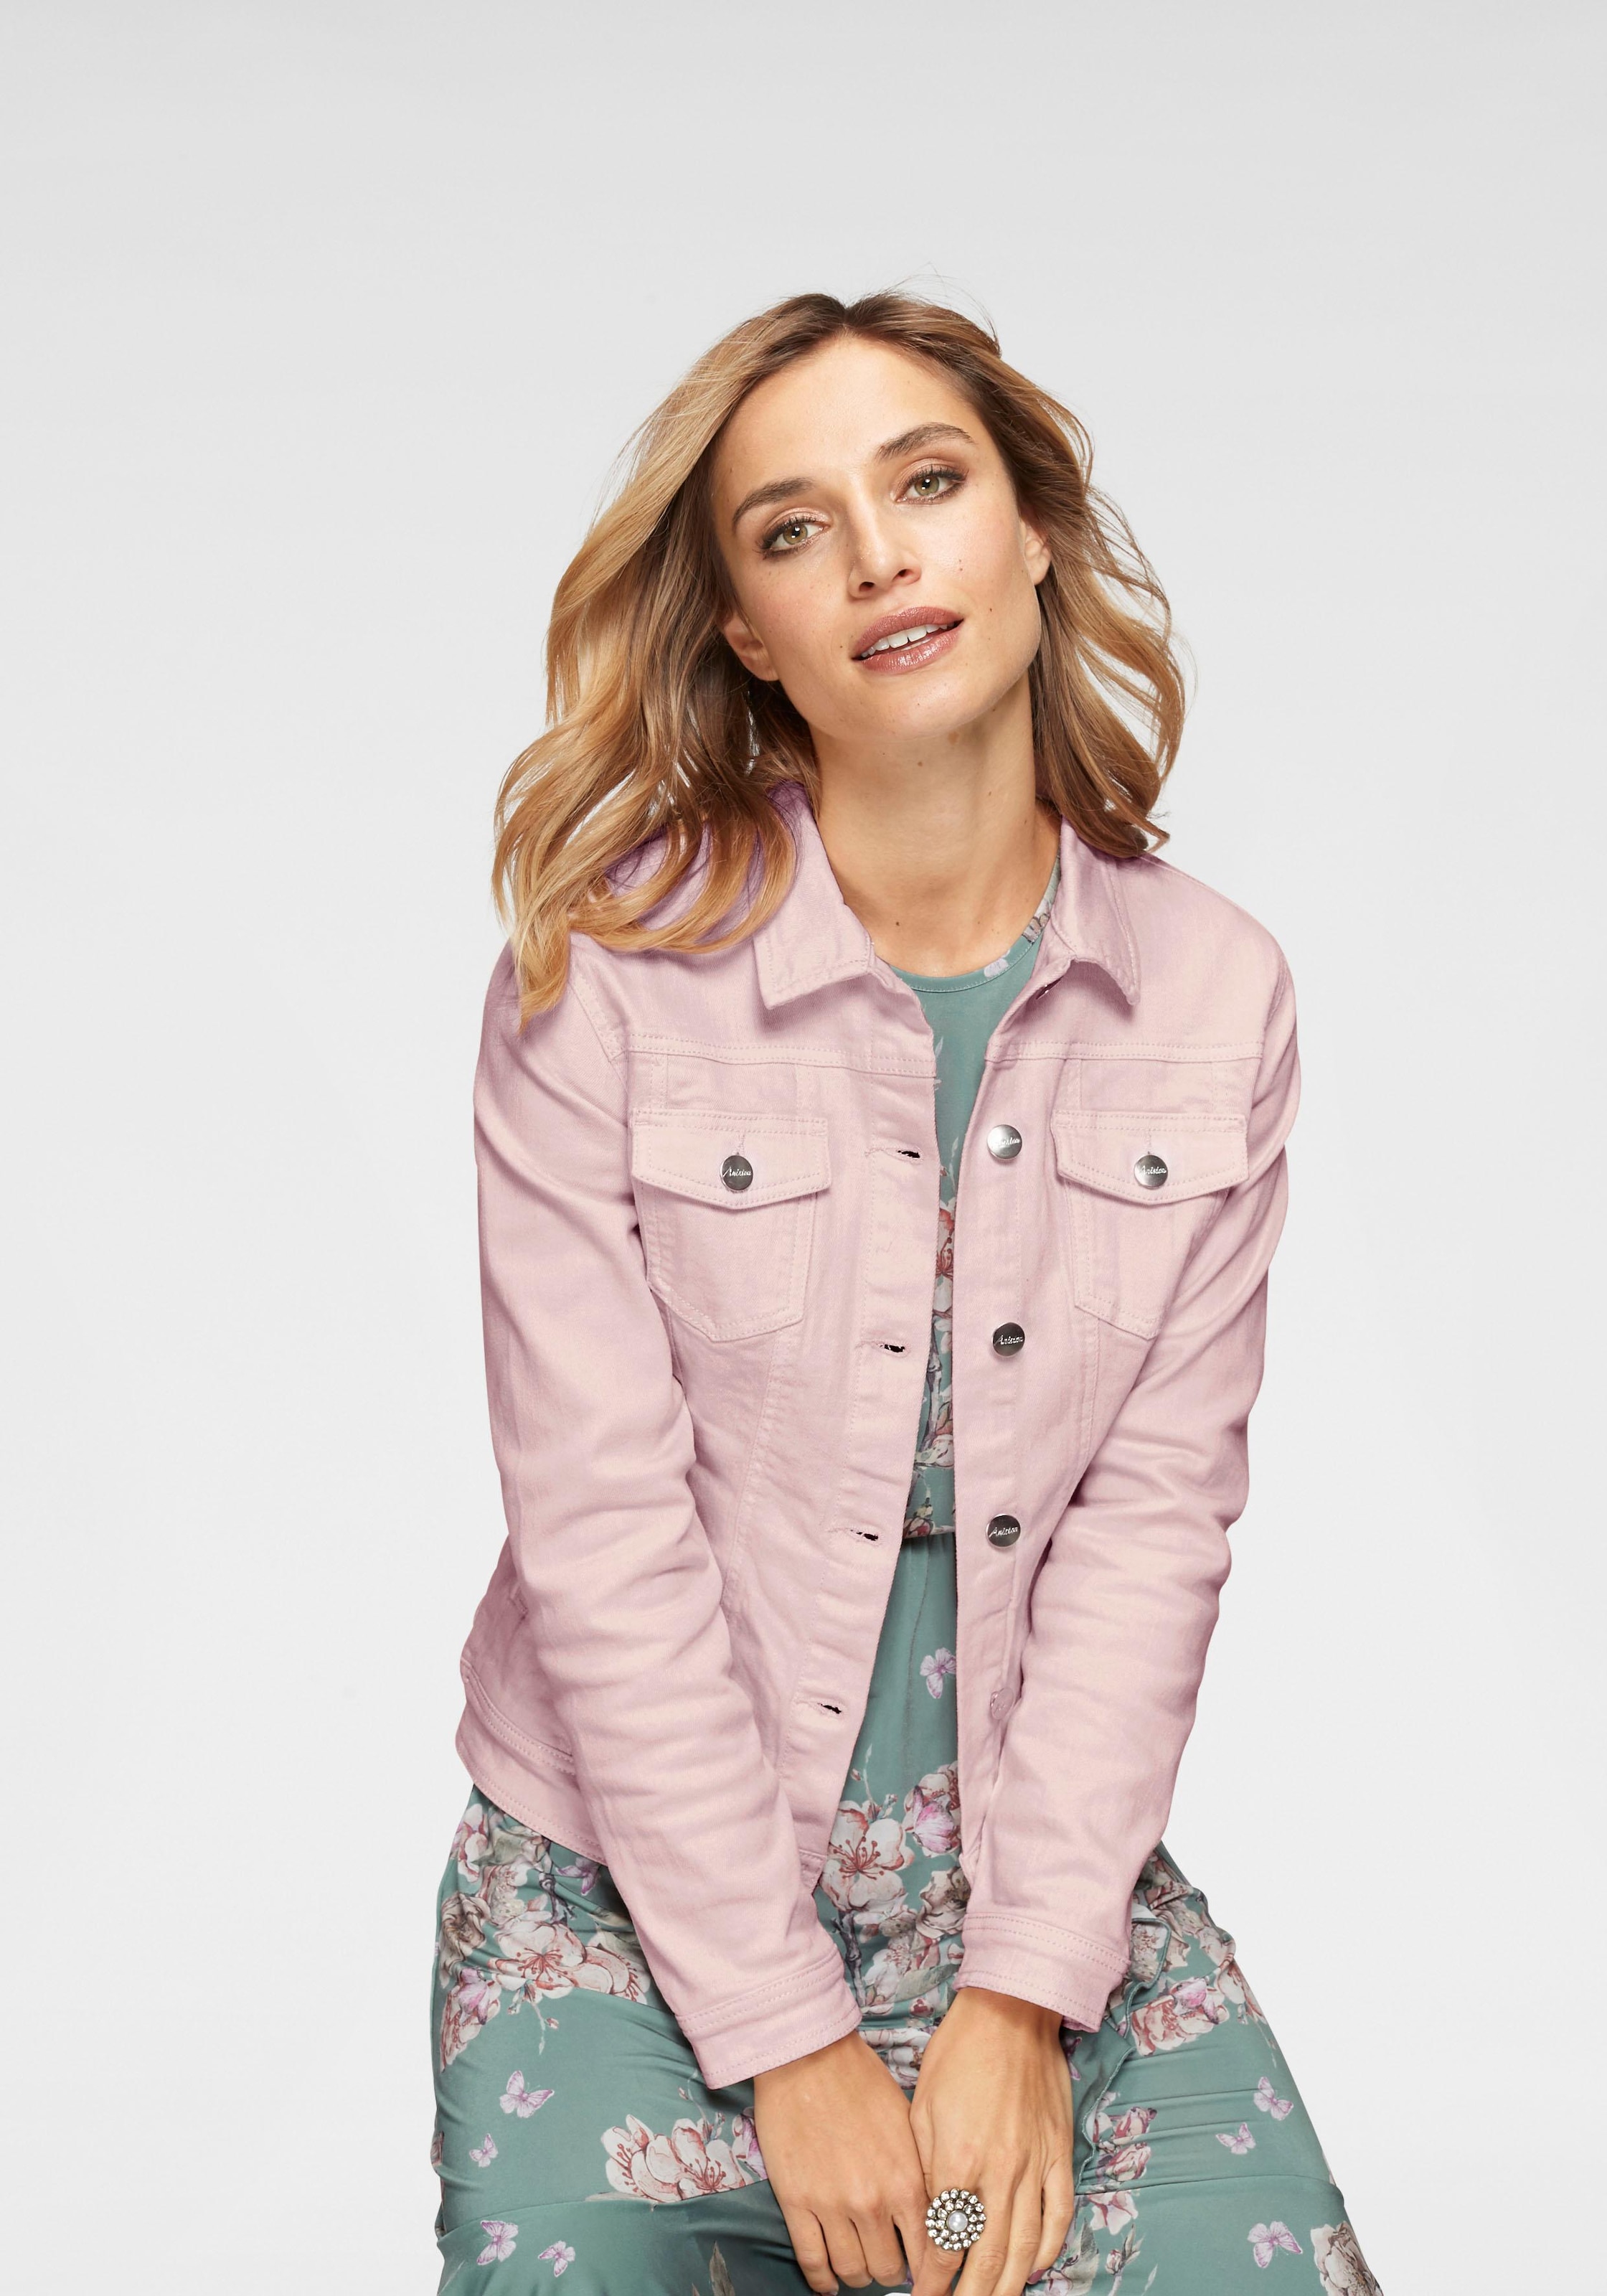 Jeansjacken online kaufen | Jeansjacke für Damen auf